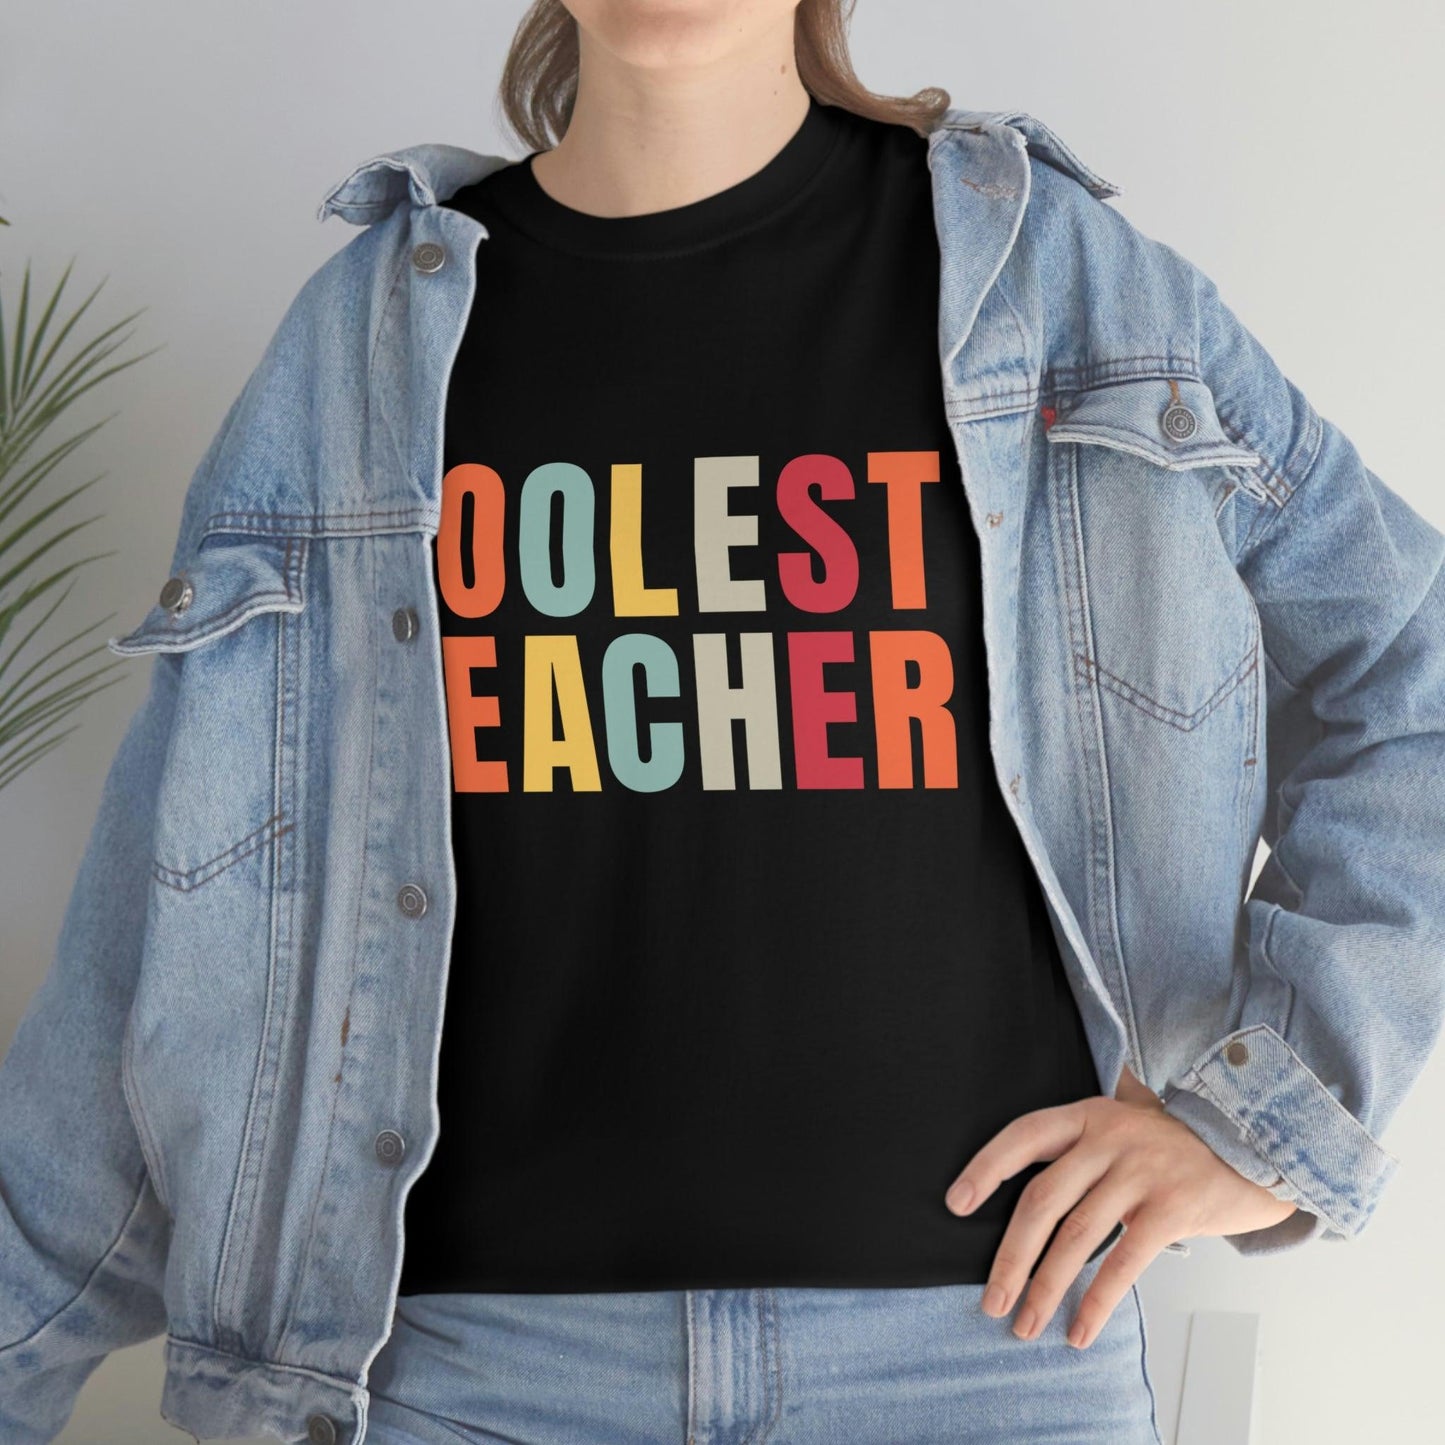 Teacher appreciation gift - Coolest Teacher Shirt - Teacher shirt